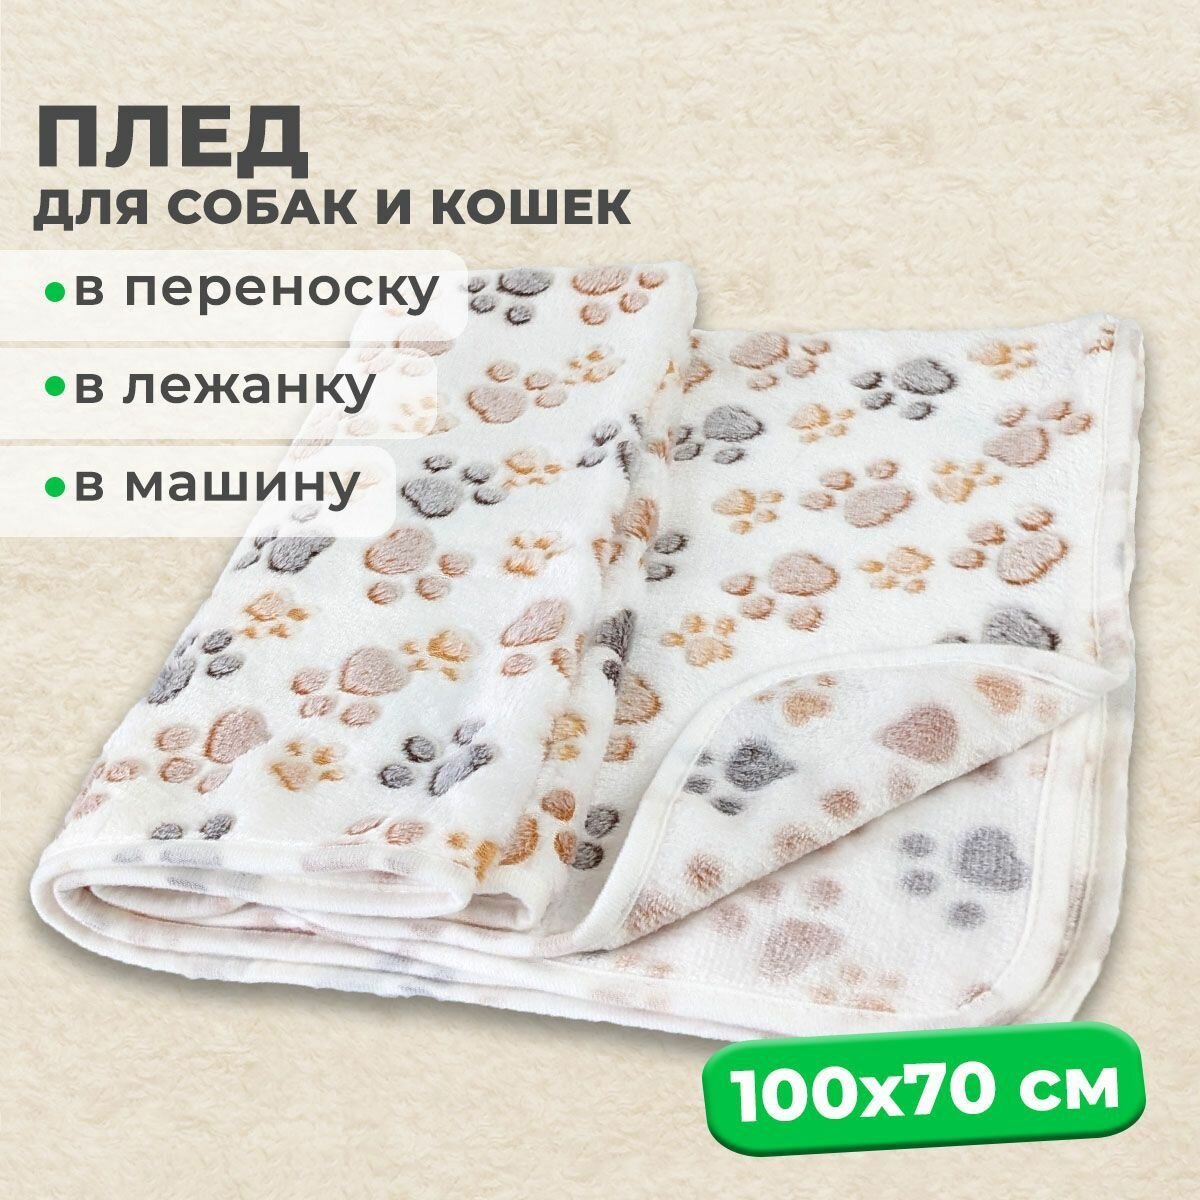 Мини-плед MiloPets для собак и кошек, подстилка 100х70 см, в лежанку для животных мелких и средних пород, белый